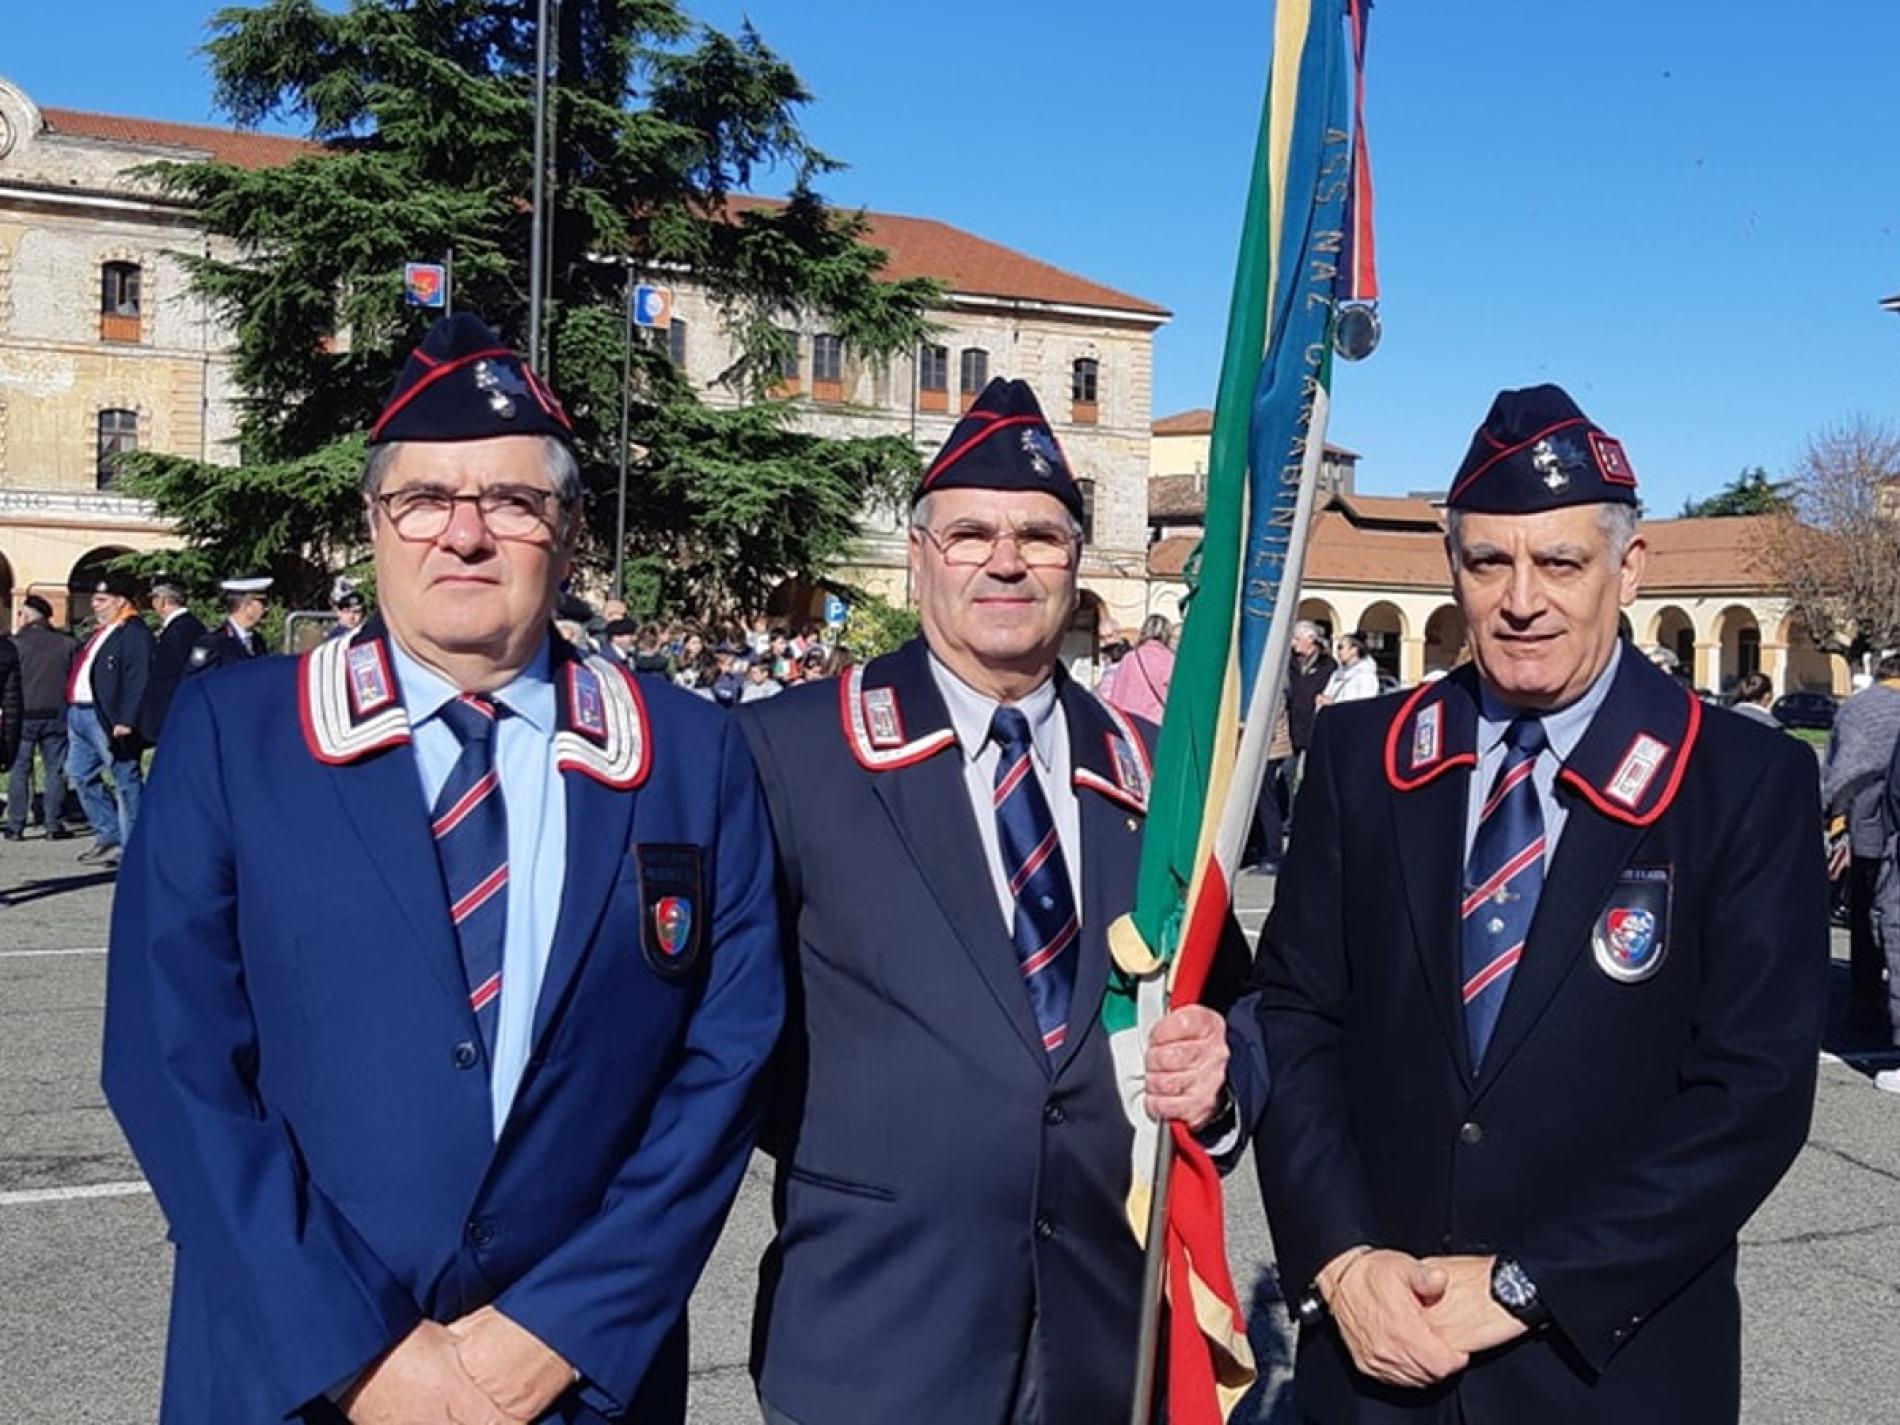 Associazione Carabinieri, Roberto Trentin è il nuovo presidente